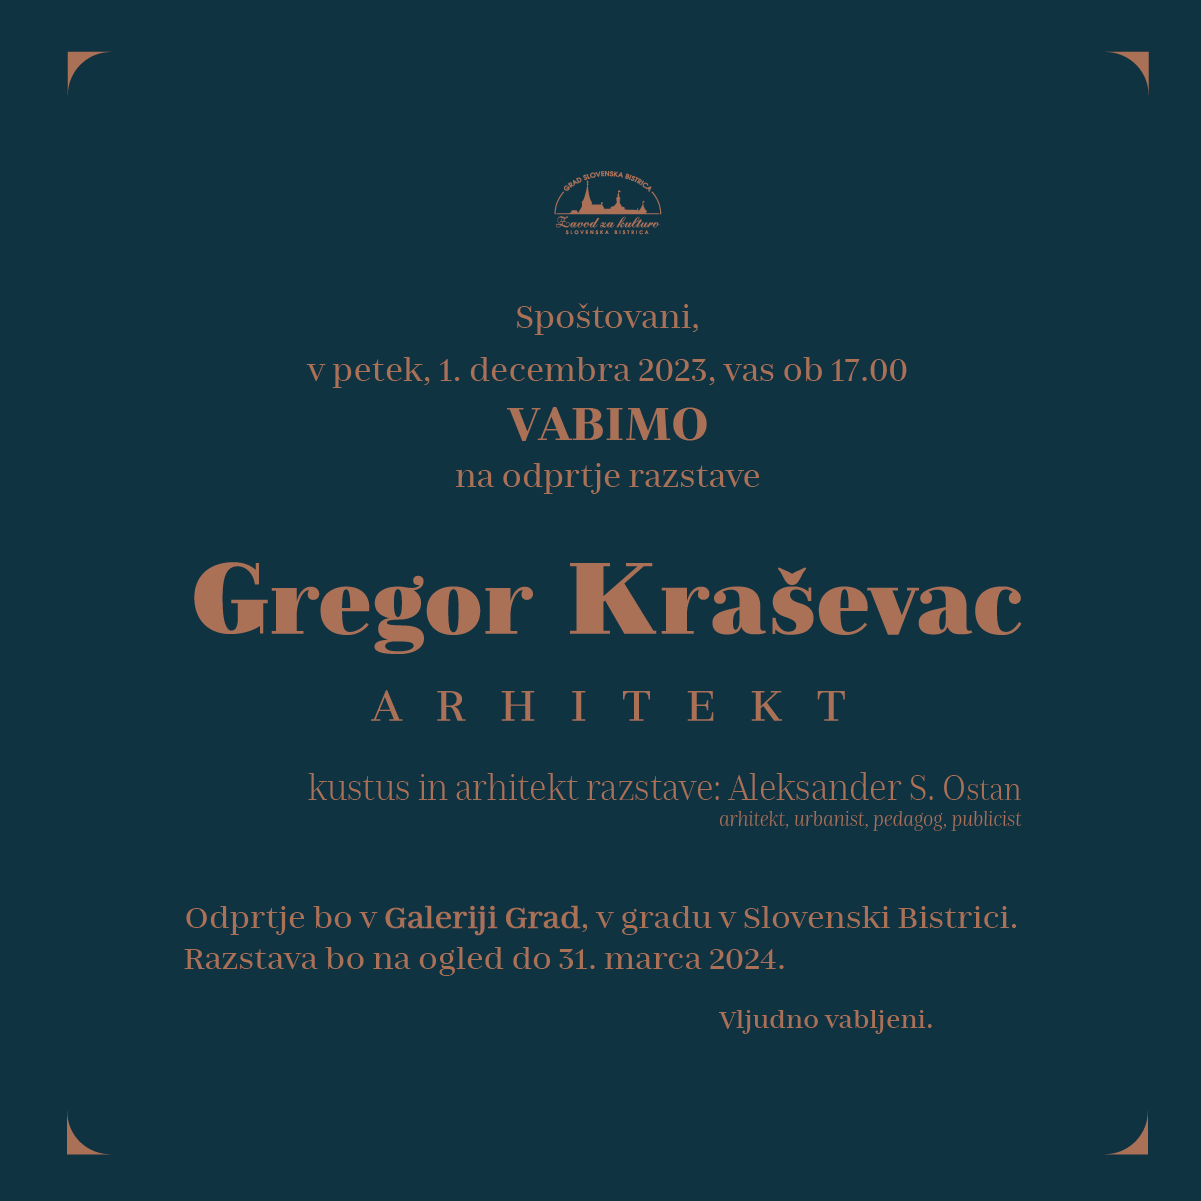 Gregor Kraševac arhitekt